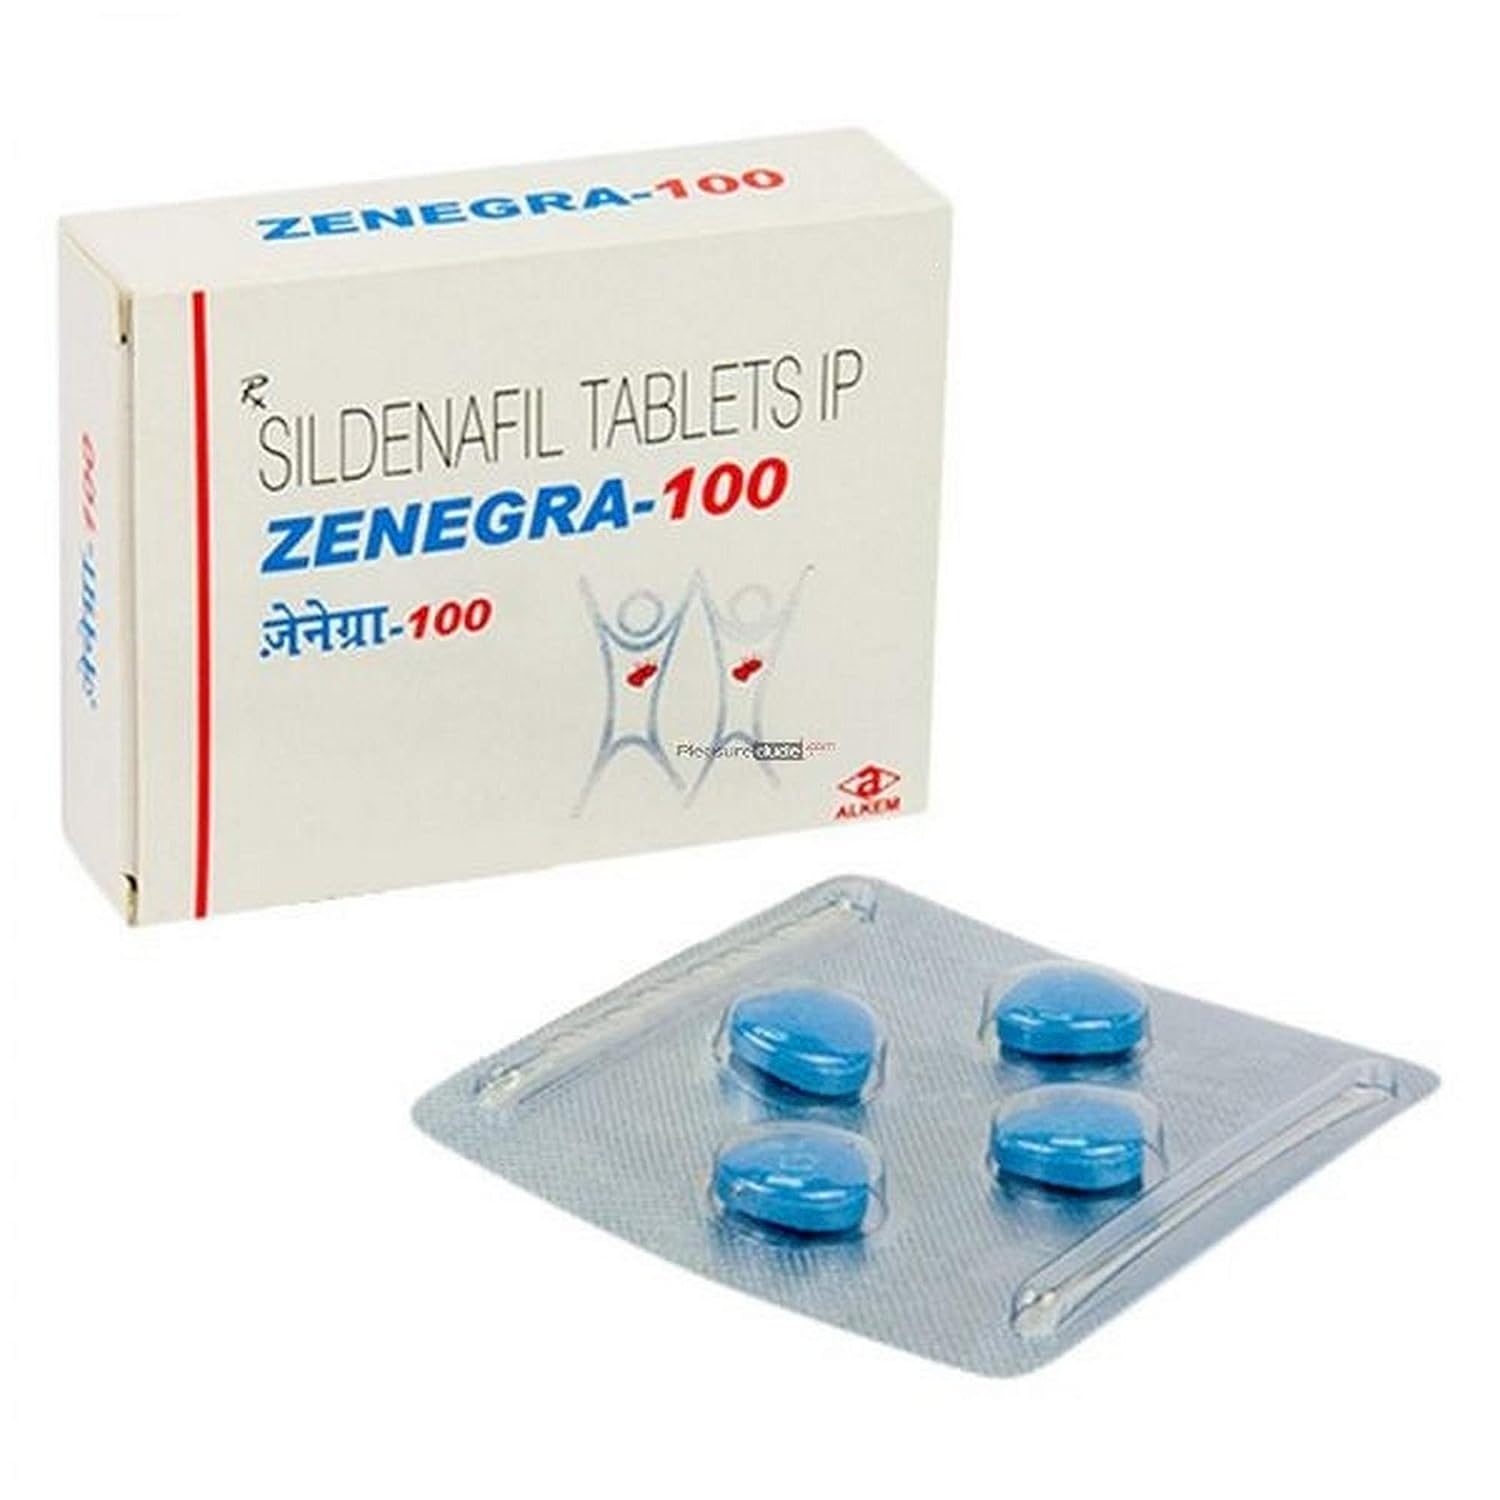 Zenegra Tablets